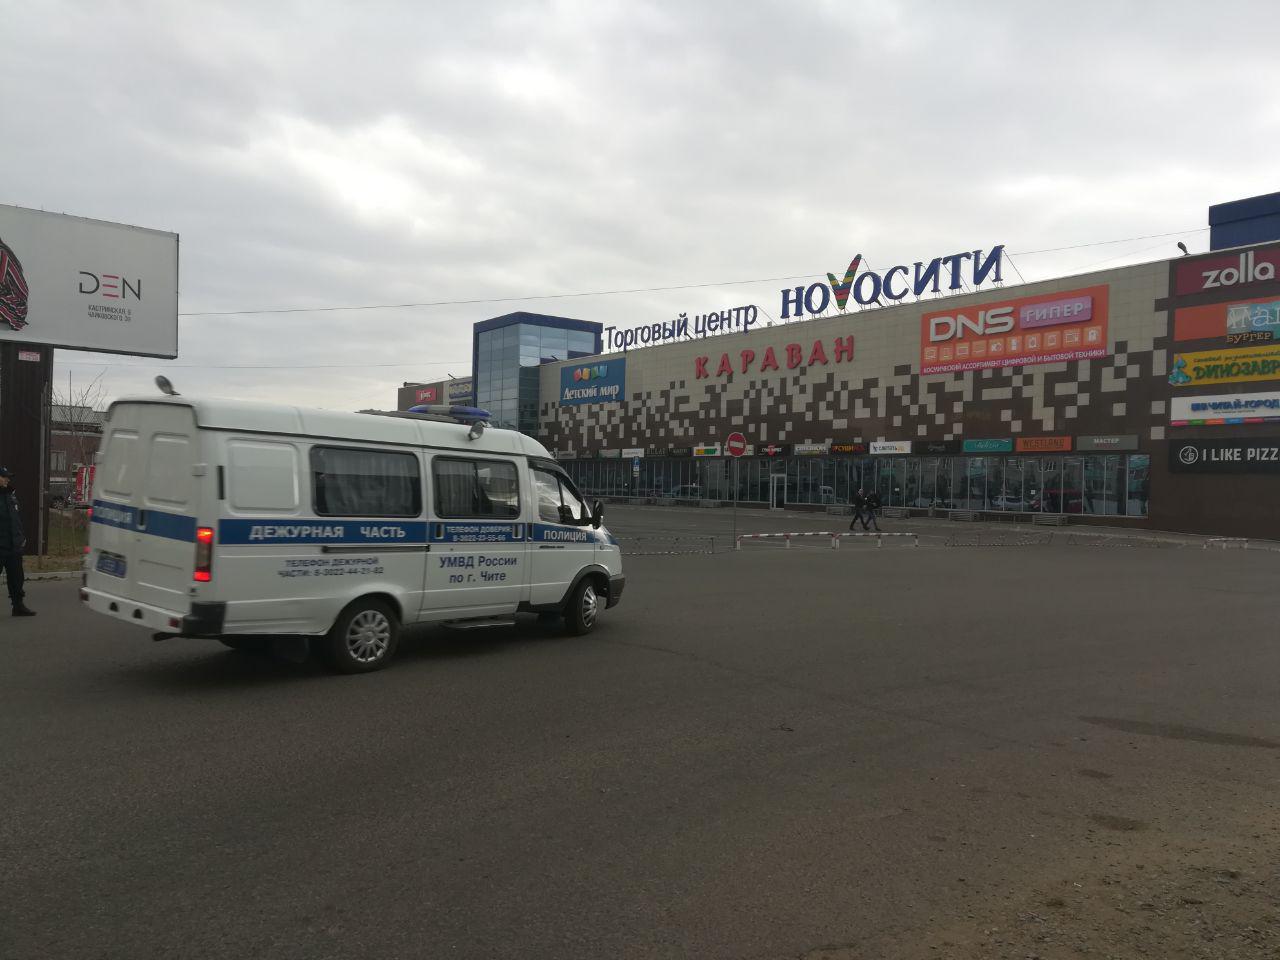 ЦТ «Новосити» эвакуировали из-за сообщения о взрывном устройстве (ФОТО)